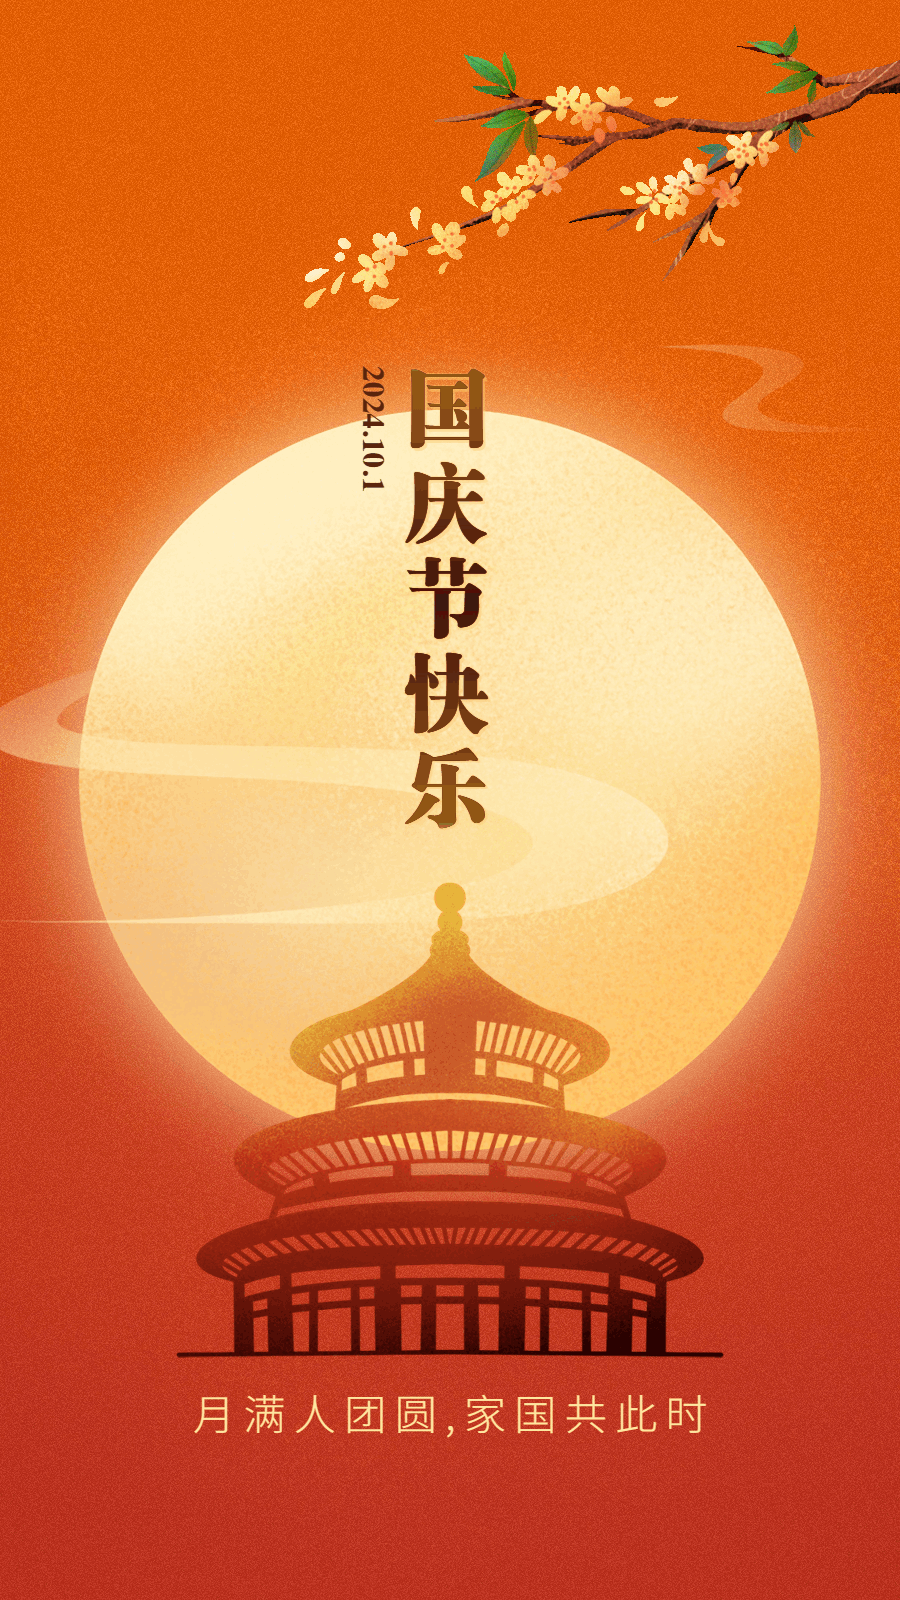 国庆中秋双节祝福手绘插画动态竖版海报